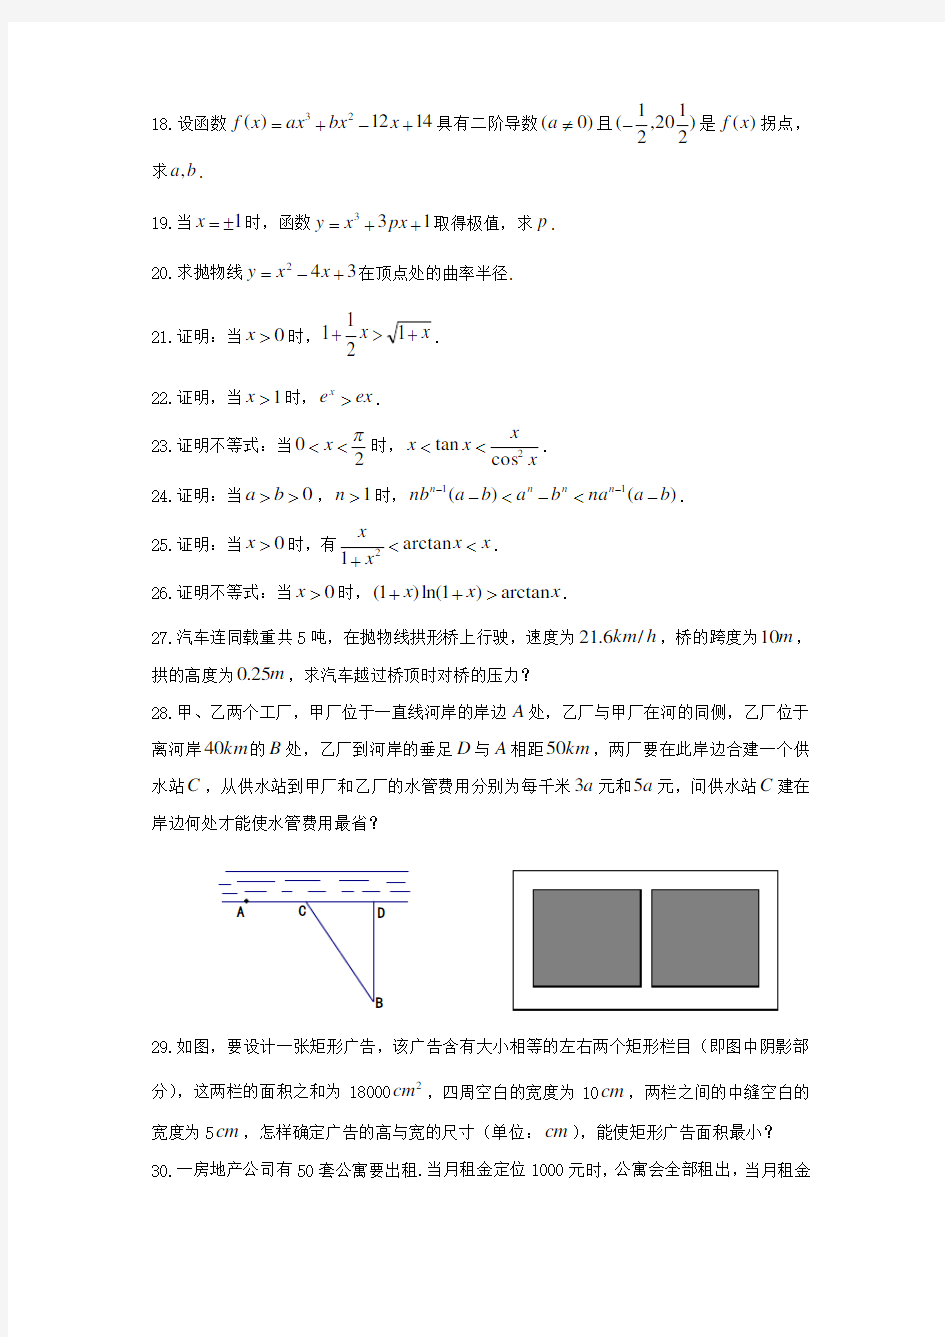 《高等数学》(上)一元函数微分学复习题